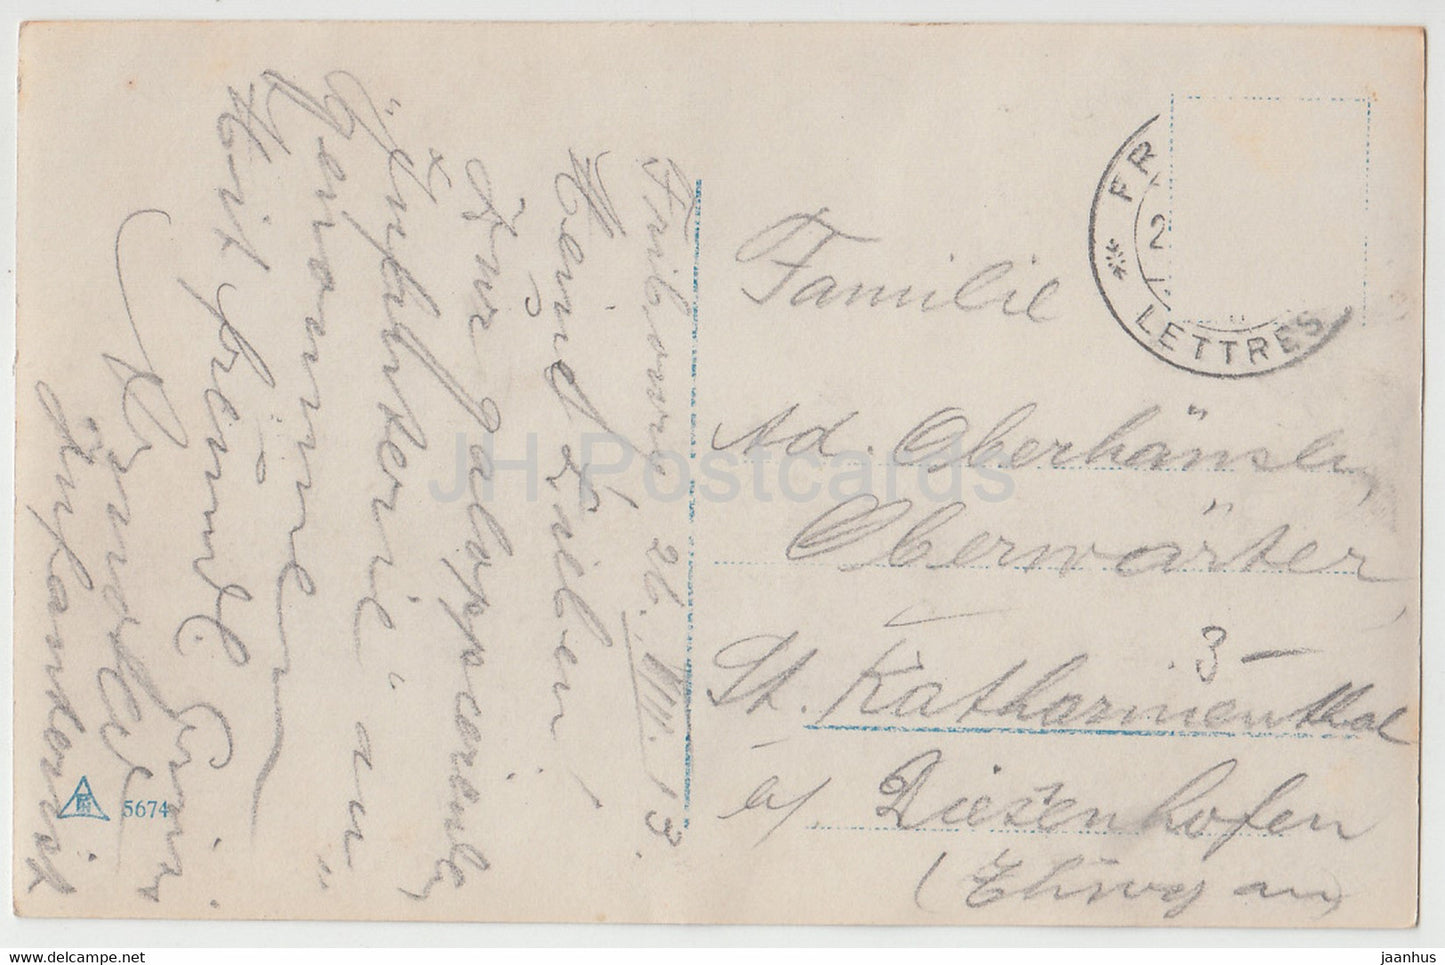 militaire - soldat - 5674 - carte postale ancienne - 1913 - utilisé